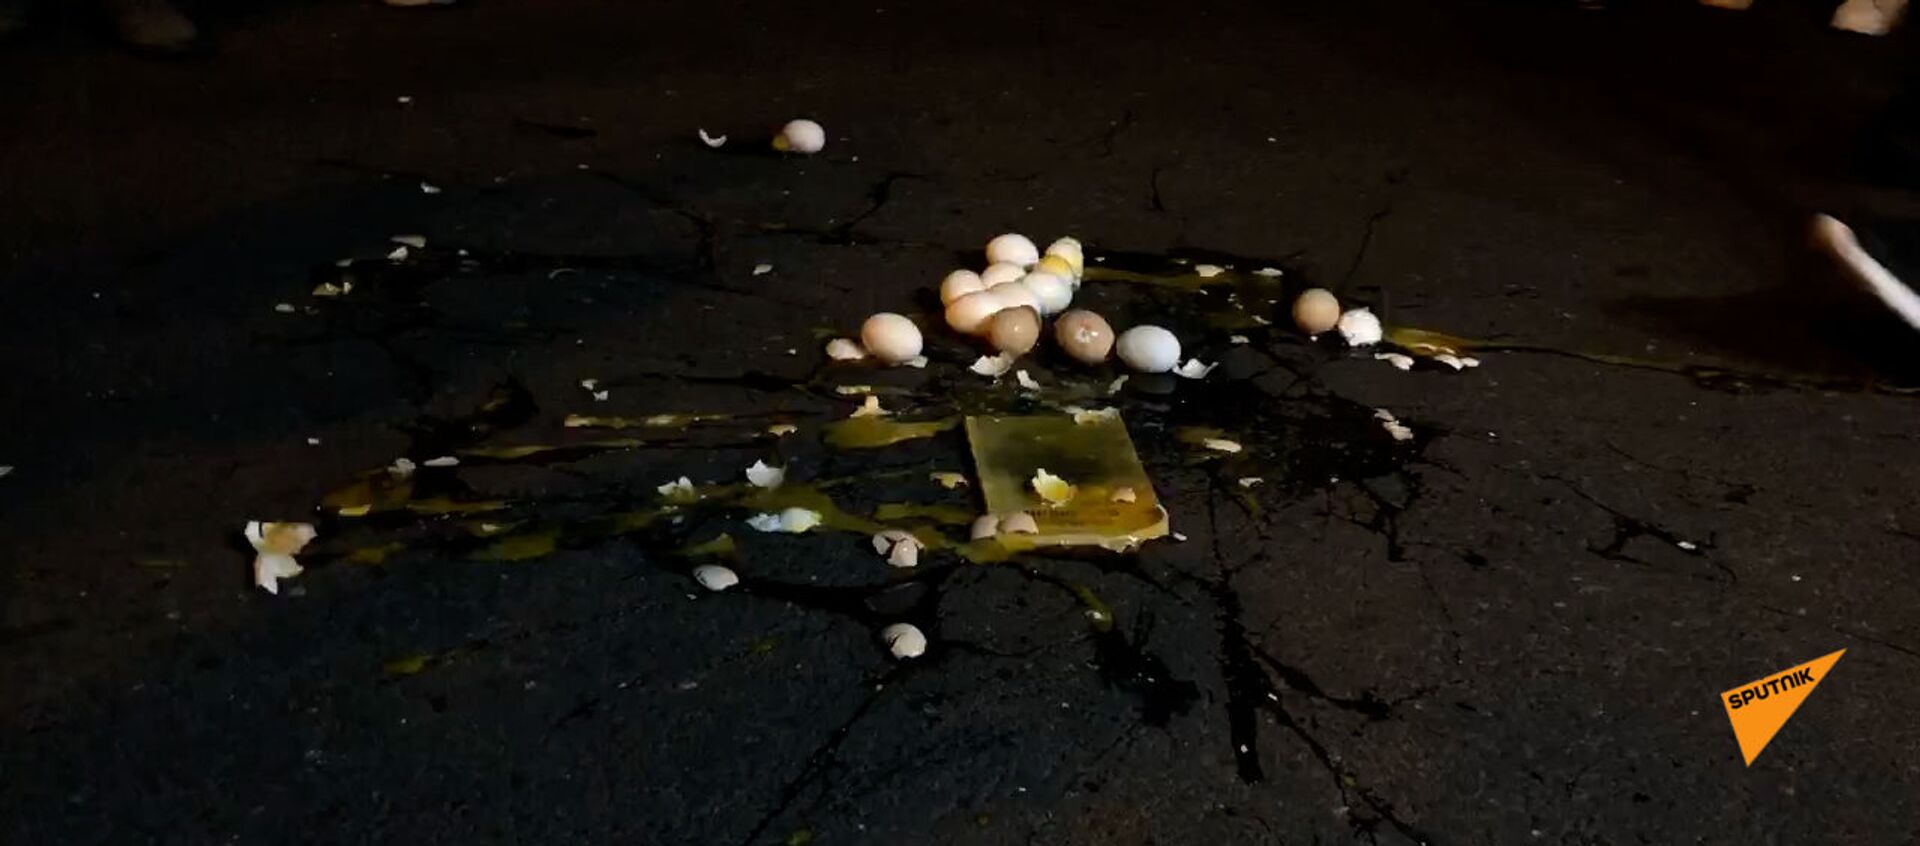 Представители оппозиции и их сторонники разбили несколько яиц у правительственной дачи в знак протеста - Sputnik Արմենիա, 1920, 21.04.2021